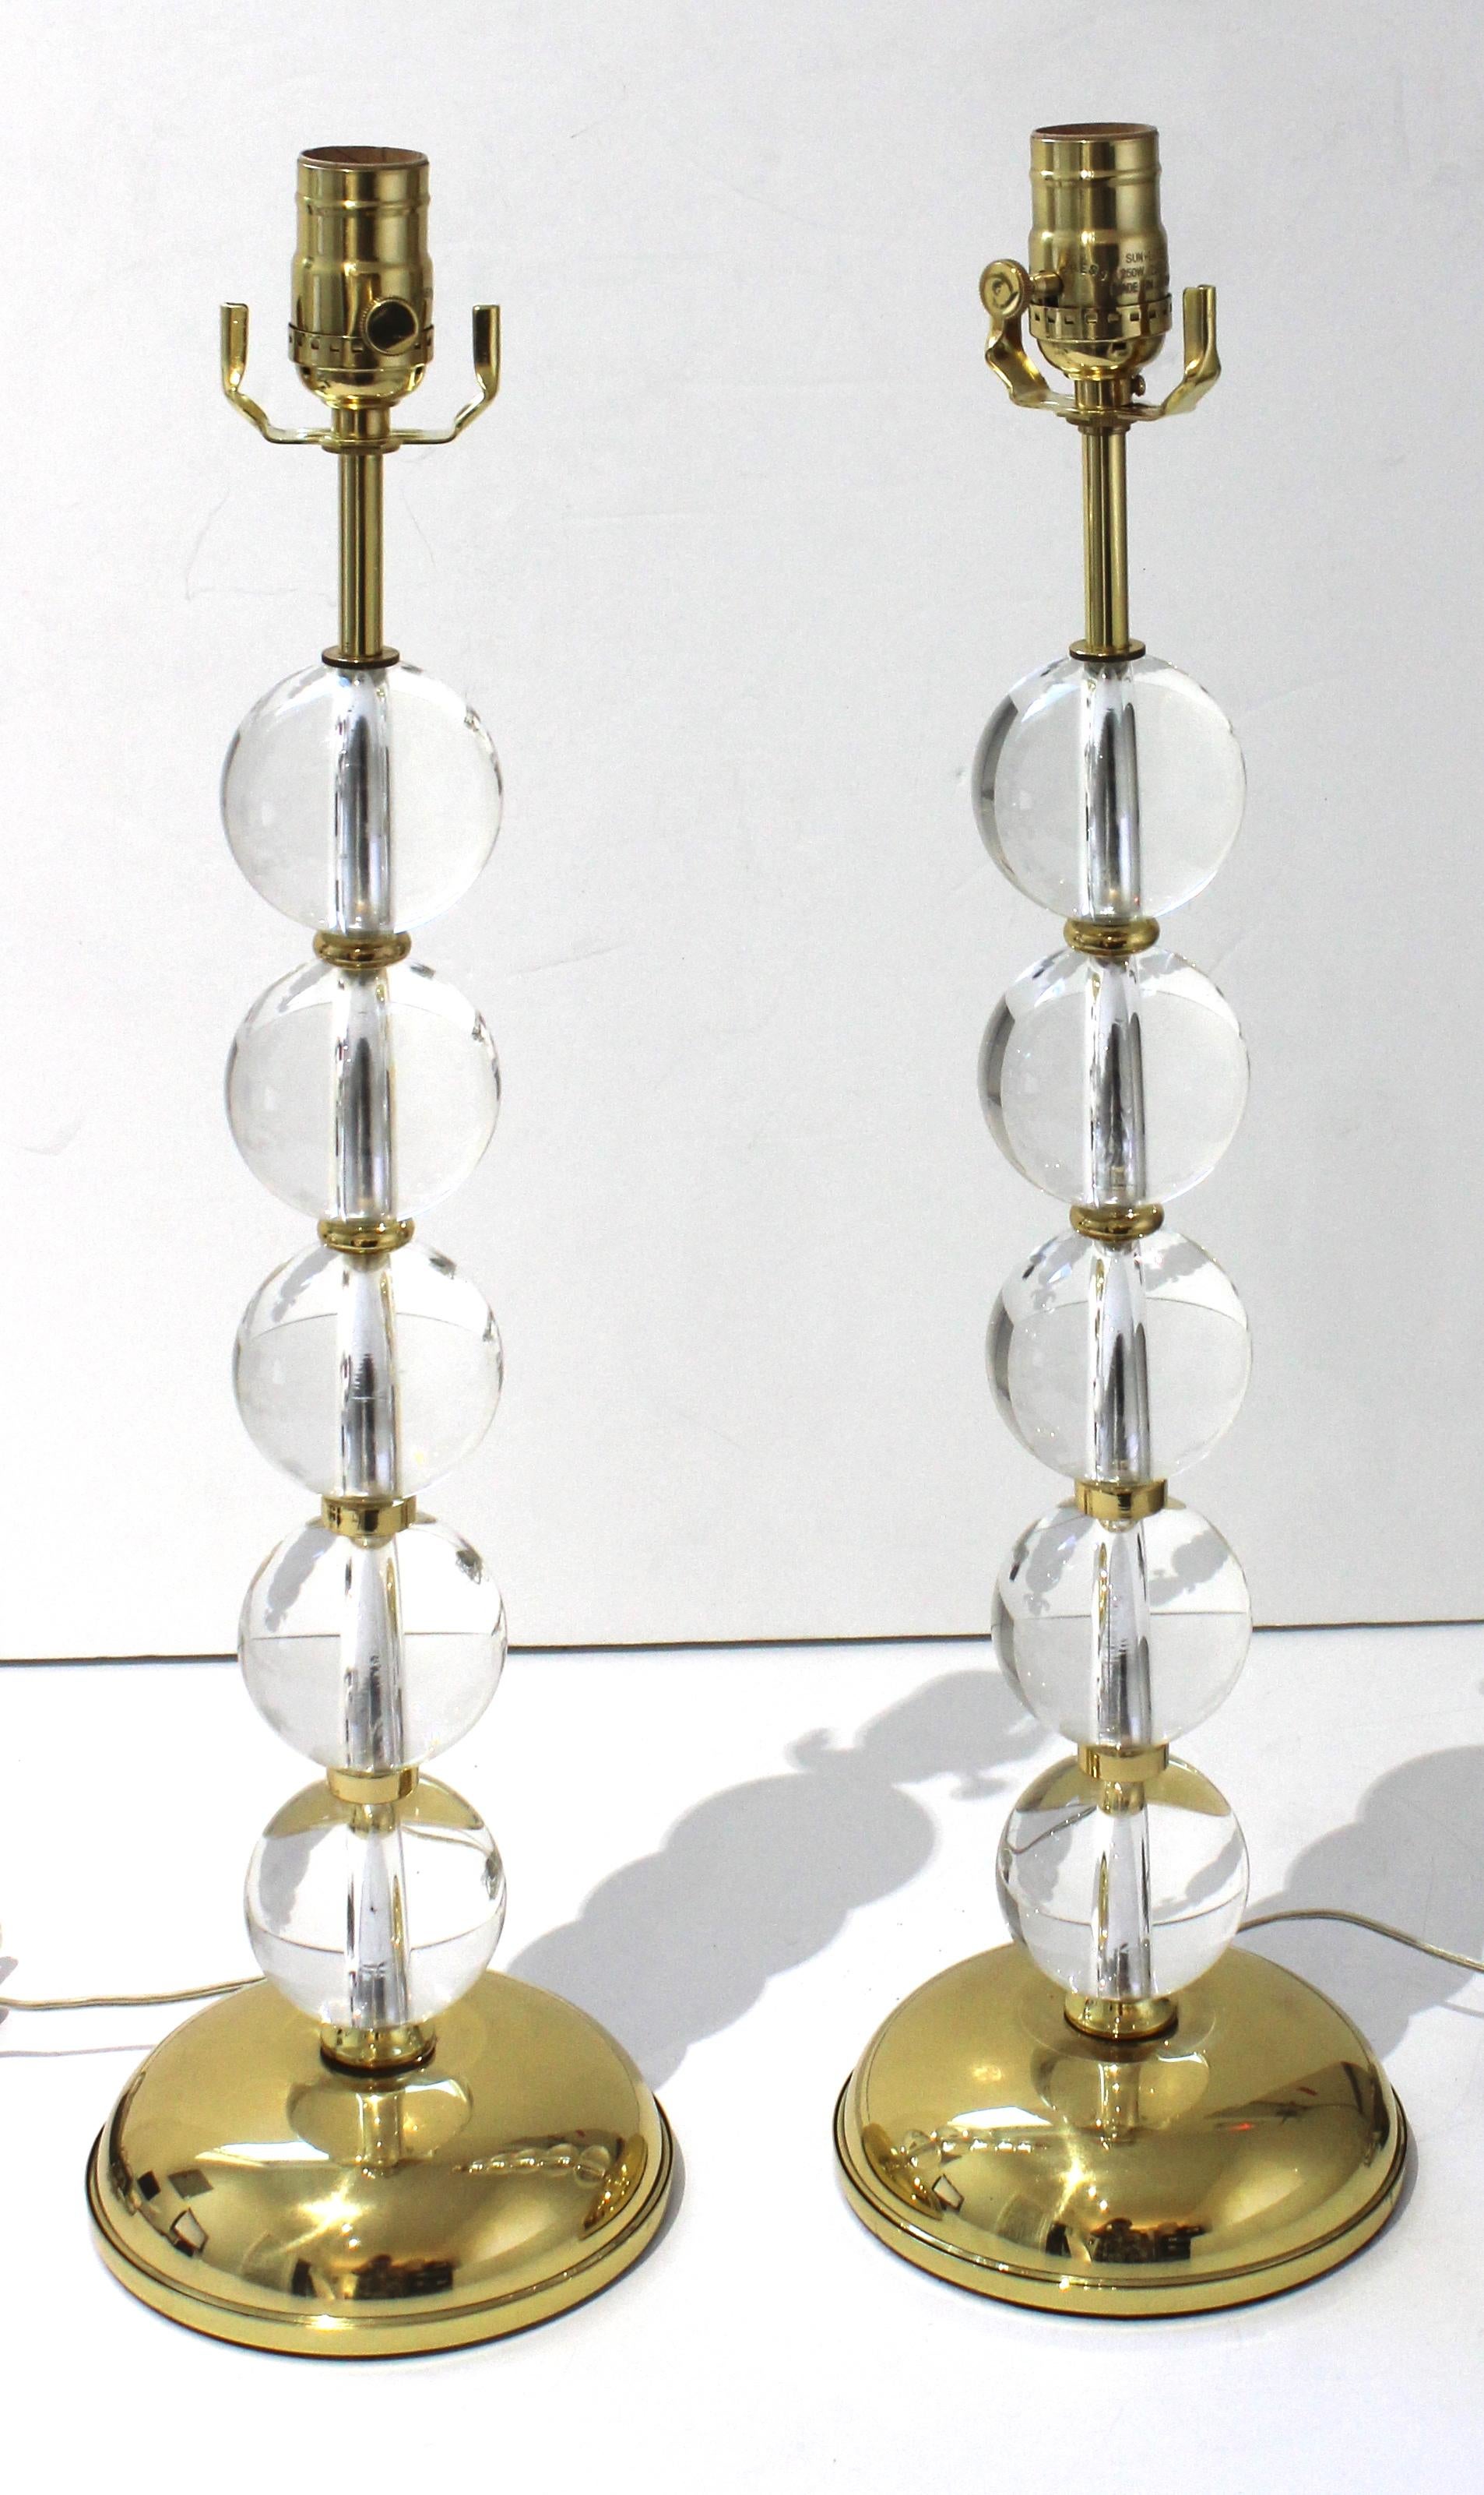 Cet ensemble élégant de lampes de table Art Déco en cristal et laiton fera une déclaration subtile avec leur forme simple et l'utilisation des matériaux. 

Remarque : ils sont dotés d'un interrupteur de ligne et d'un bouton à douille pour la